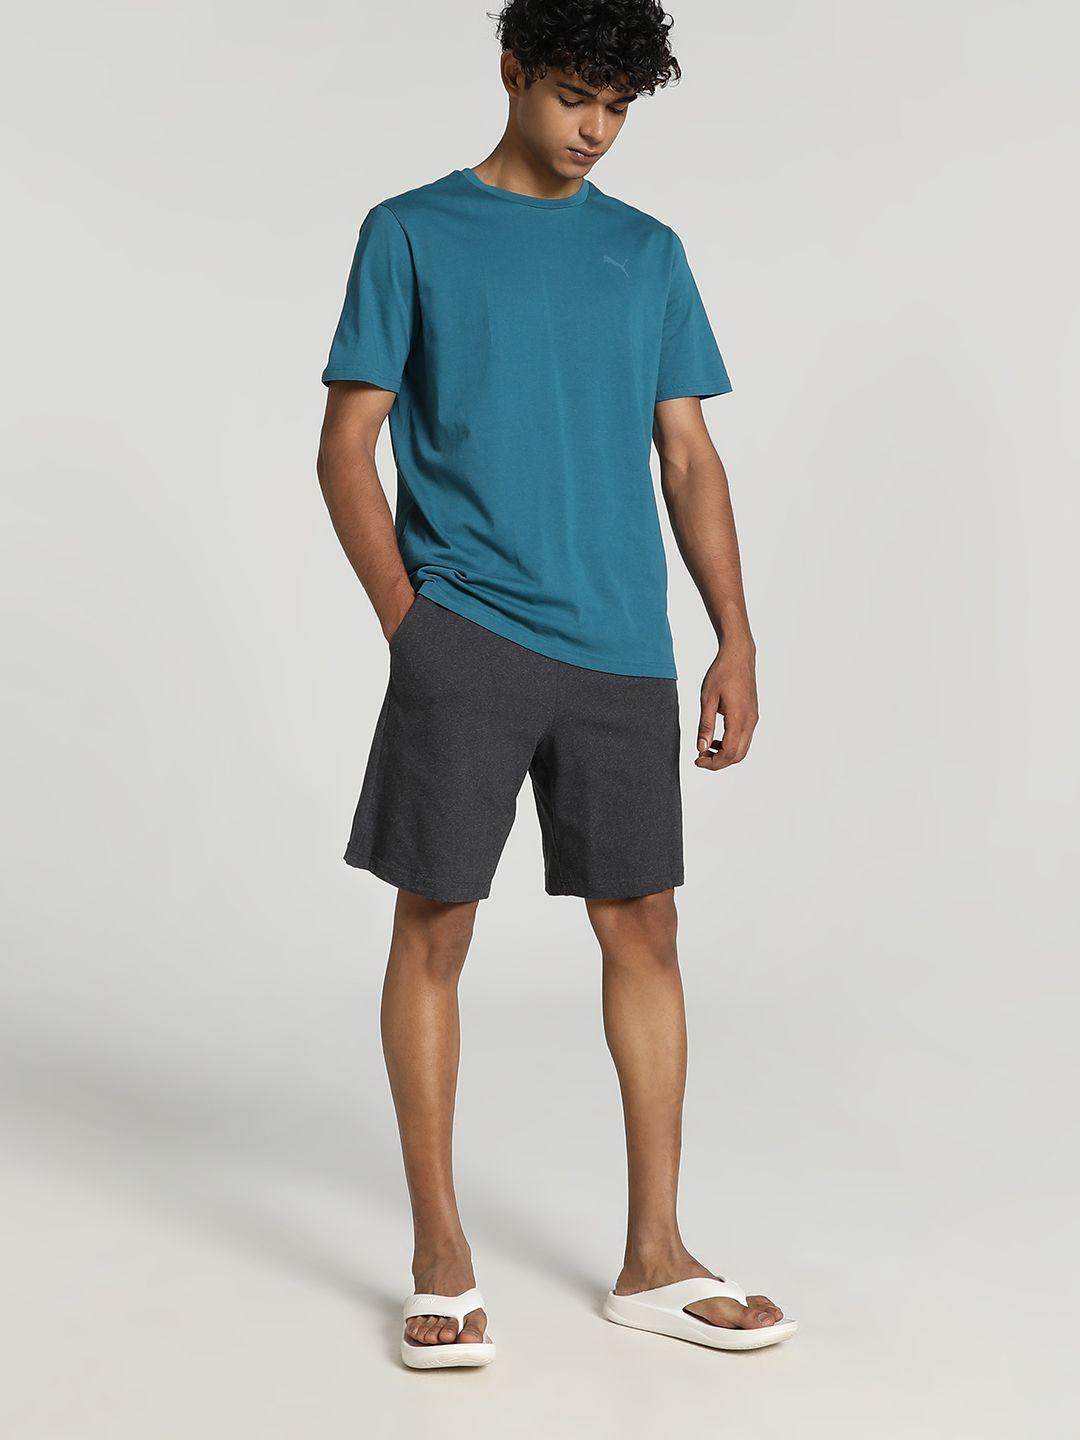 Puma Basic Round Neck T-Shirt & Shorts Set